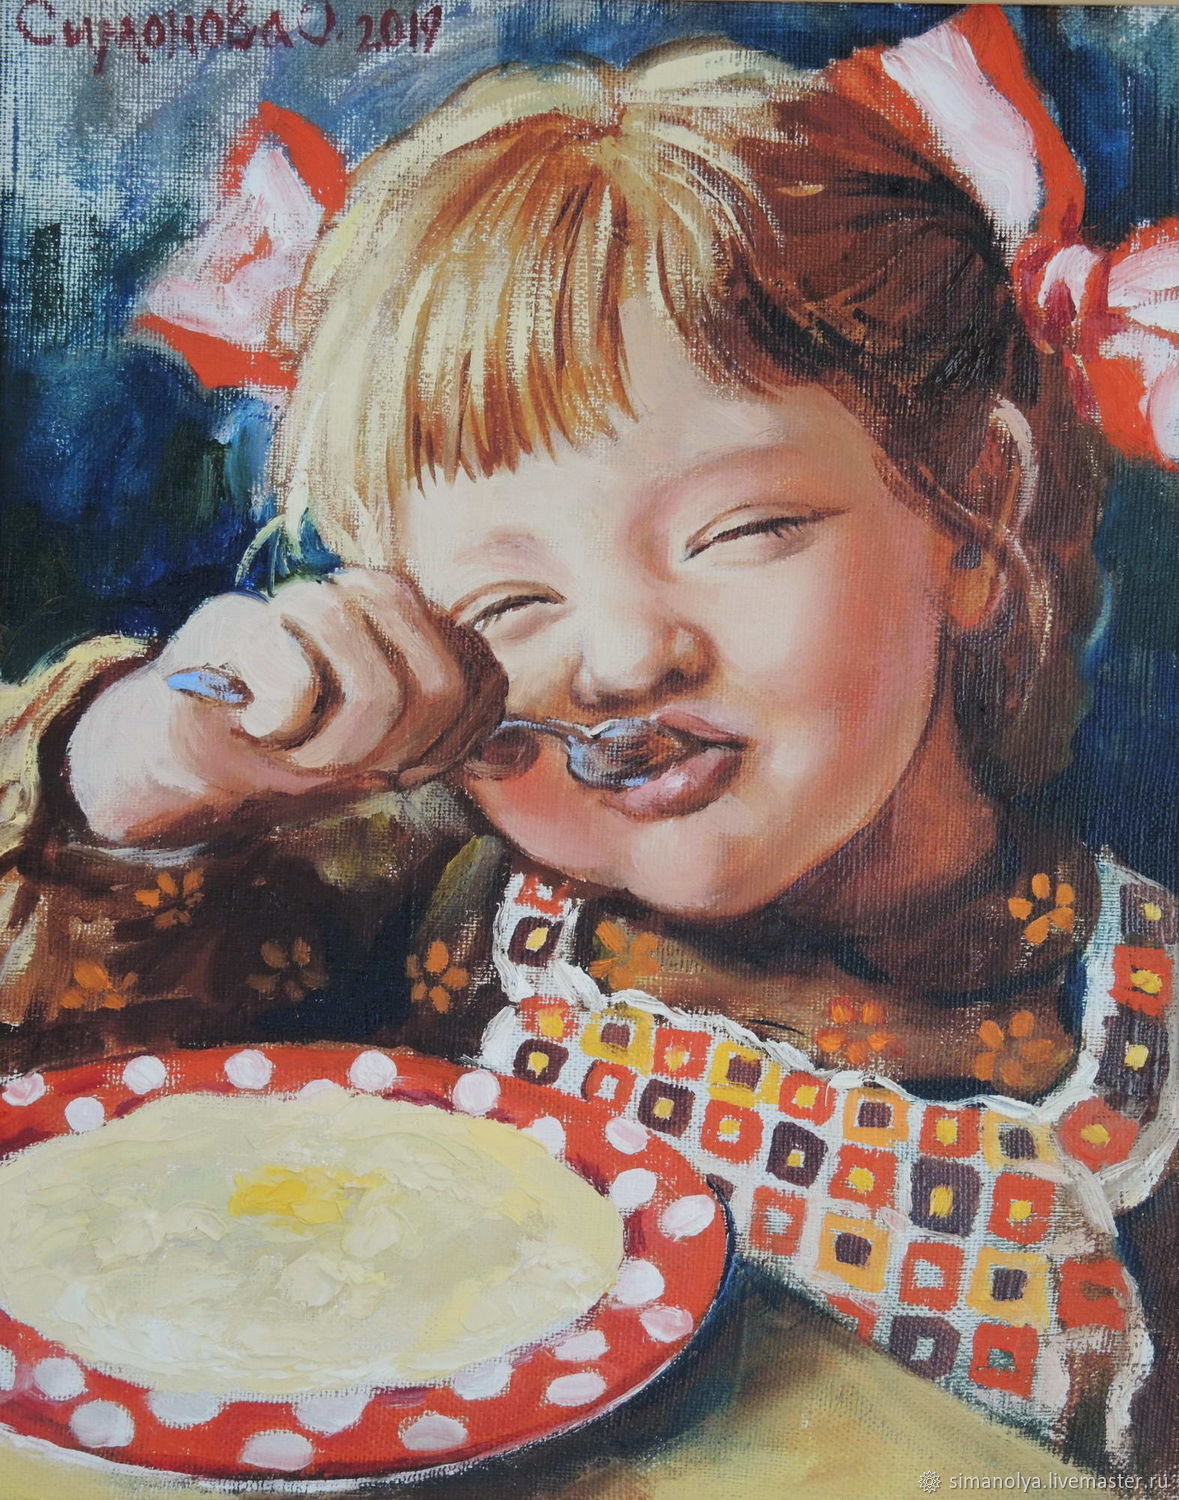 Дети едят масло. Вкусная картина. Дети в живописи.